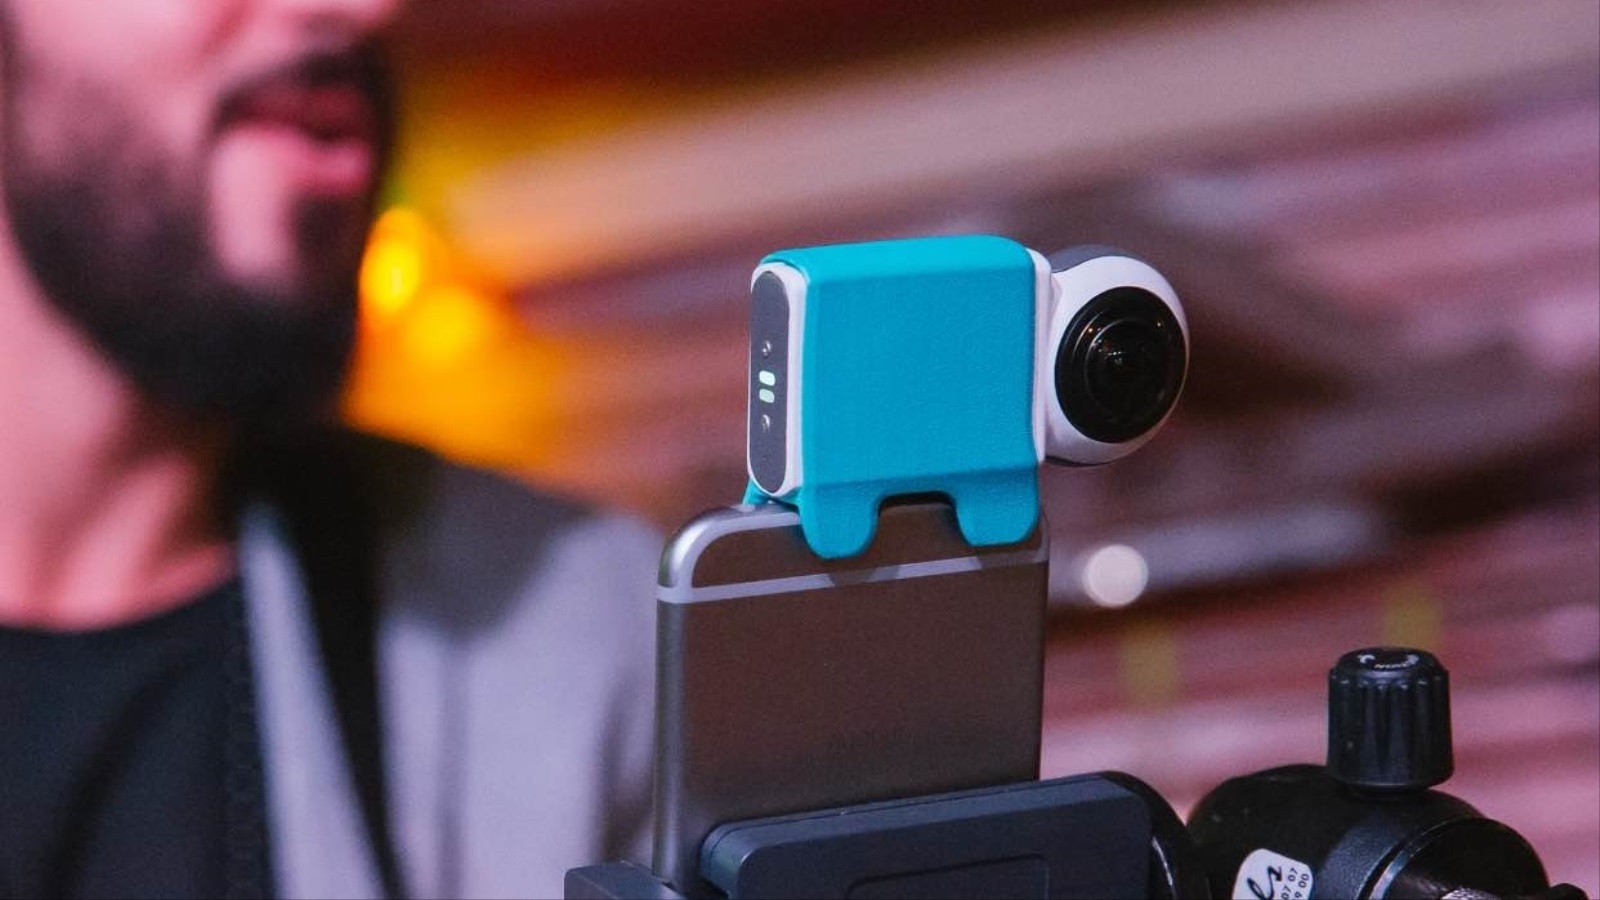 أطلقت شركة GIROPTIC كاميرا يُمكن استخدامها مع أجهزة آيفون وآيباد من شركة آبل، لتصوير وبث الفيديو بزاوية 360 درجة